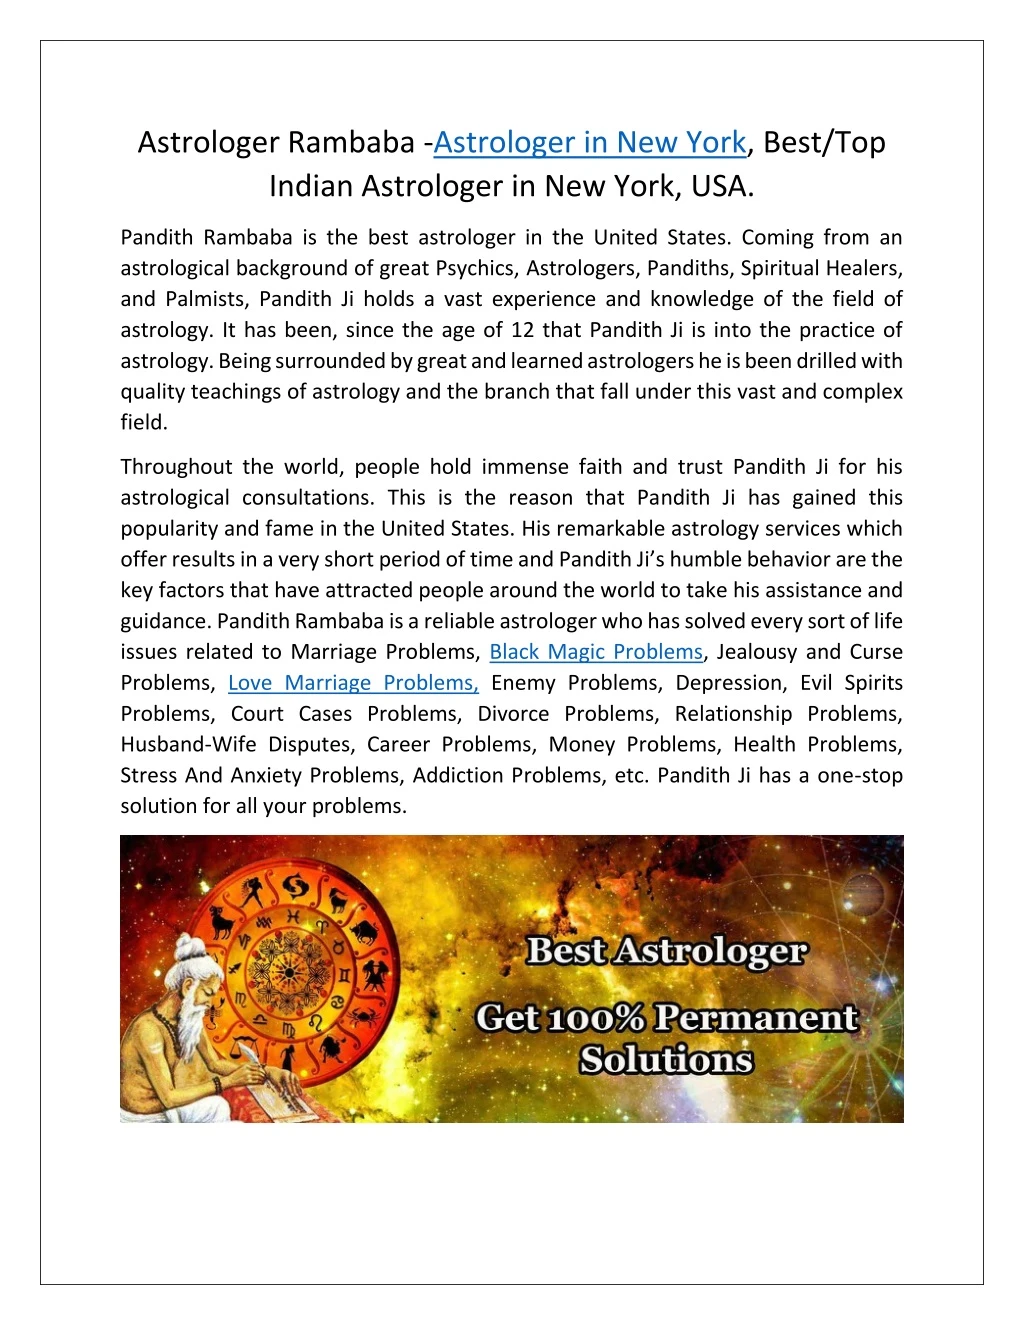 astrologer rambaba astrologer in new york best